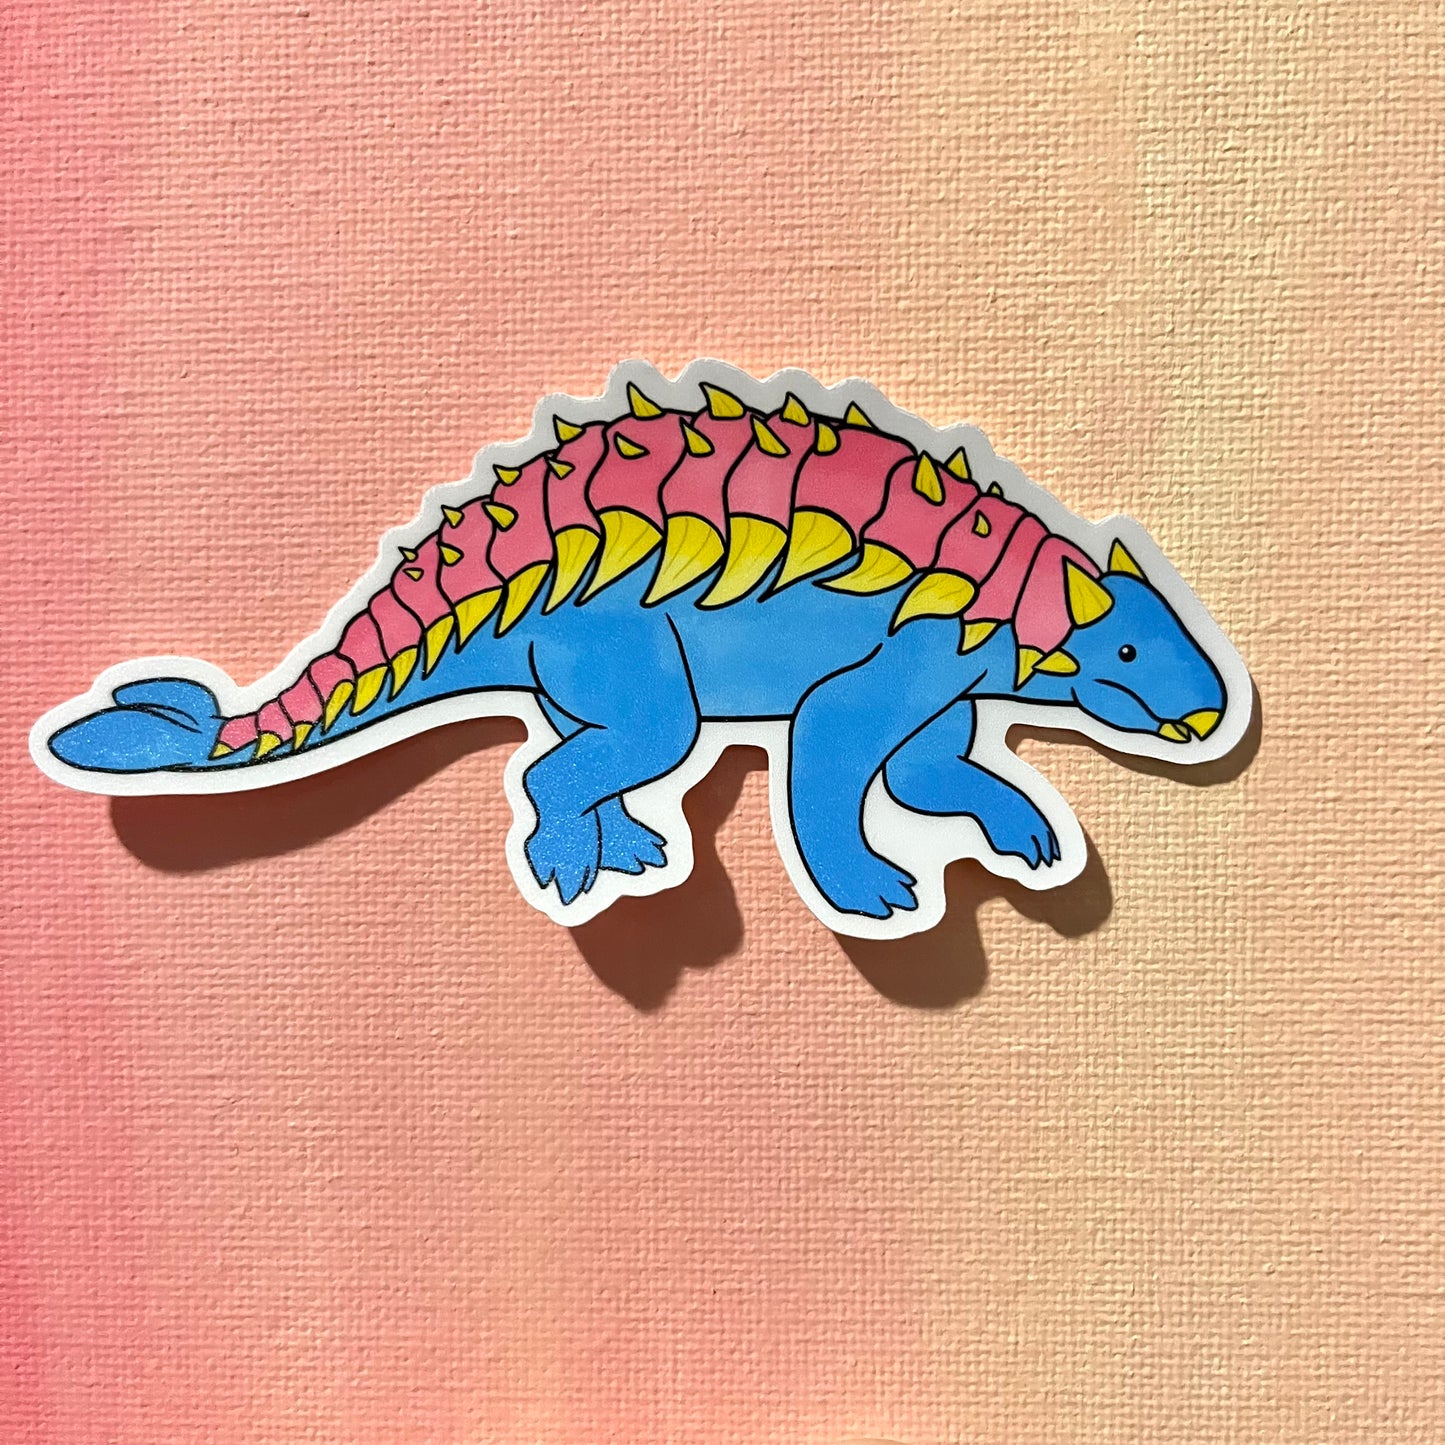 Pride Dinosaur Sticker: Pan-kylosaurus